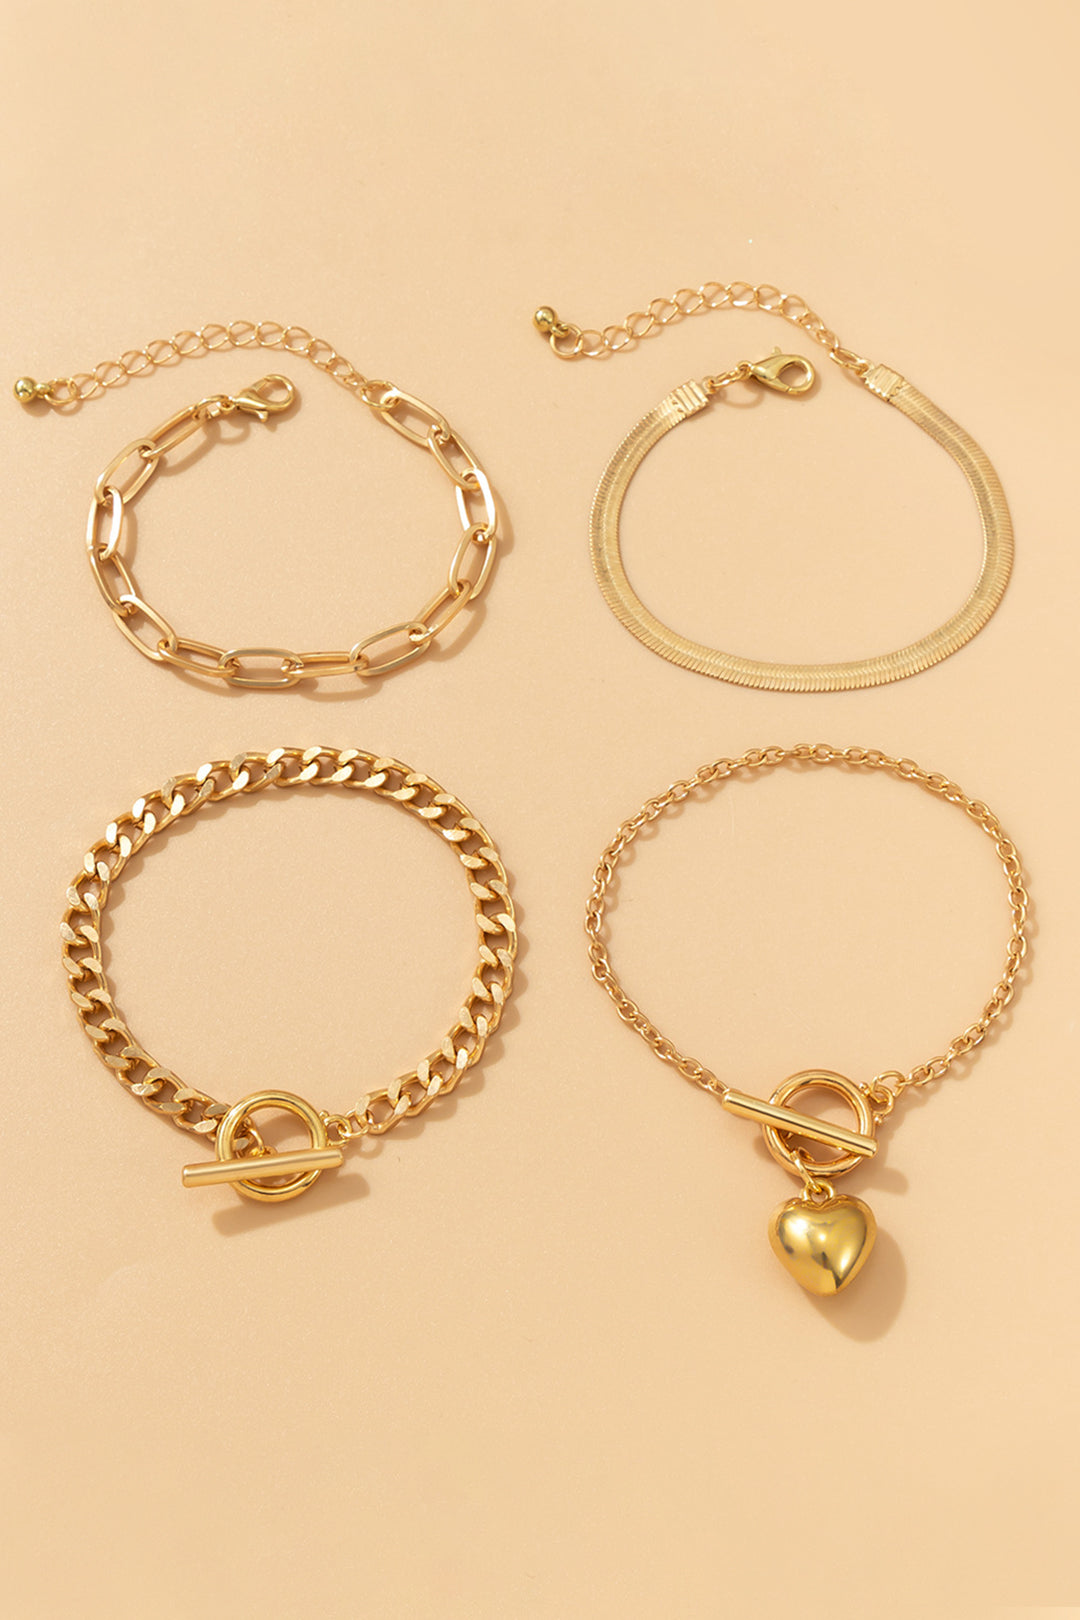 4pc Metal Chain Bracelet Set